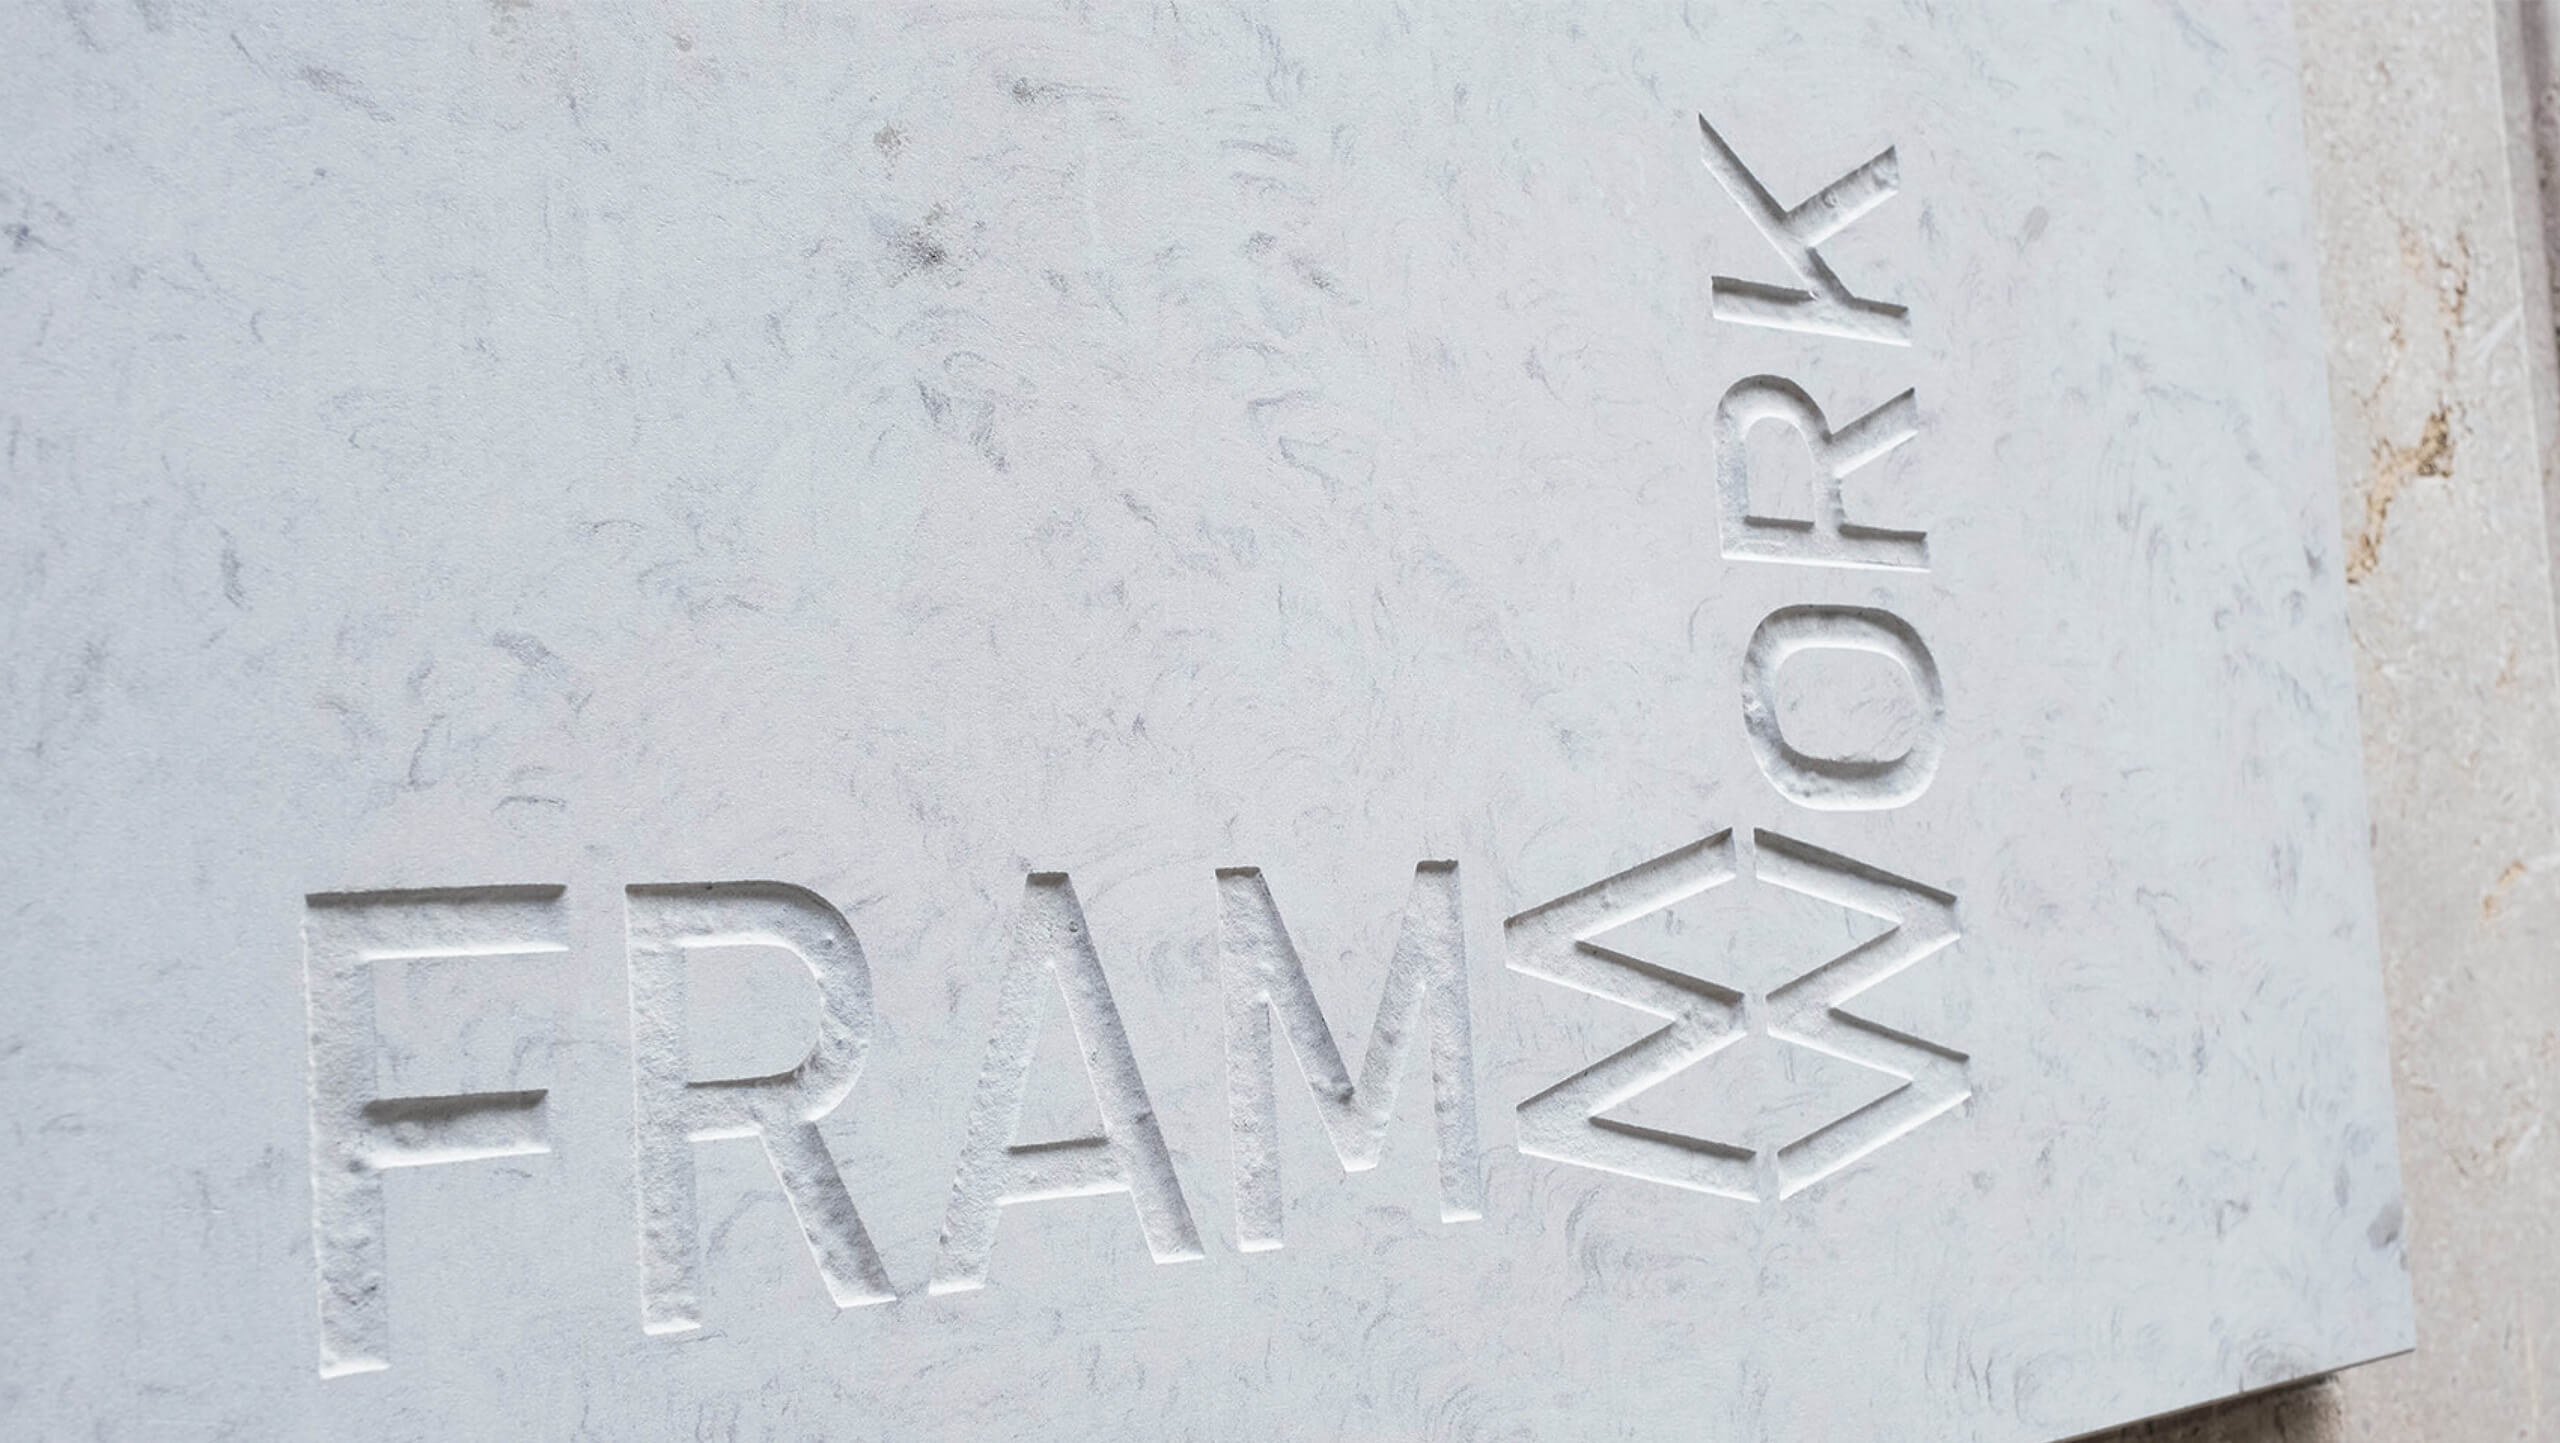 Framework marble etching of logo